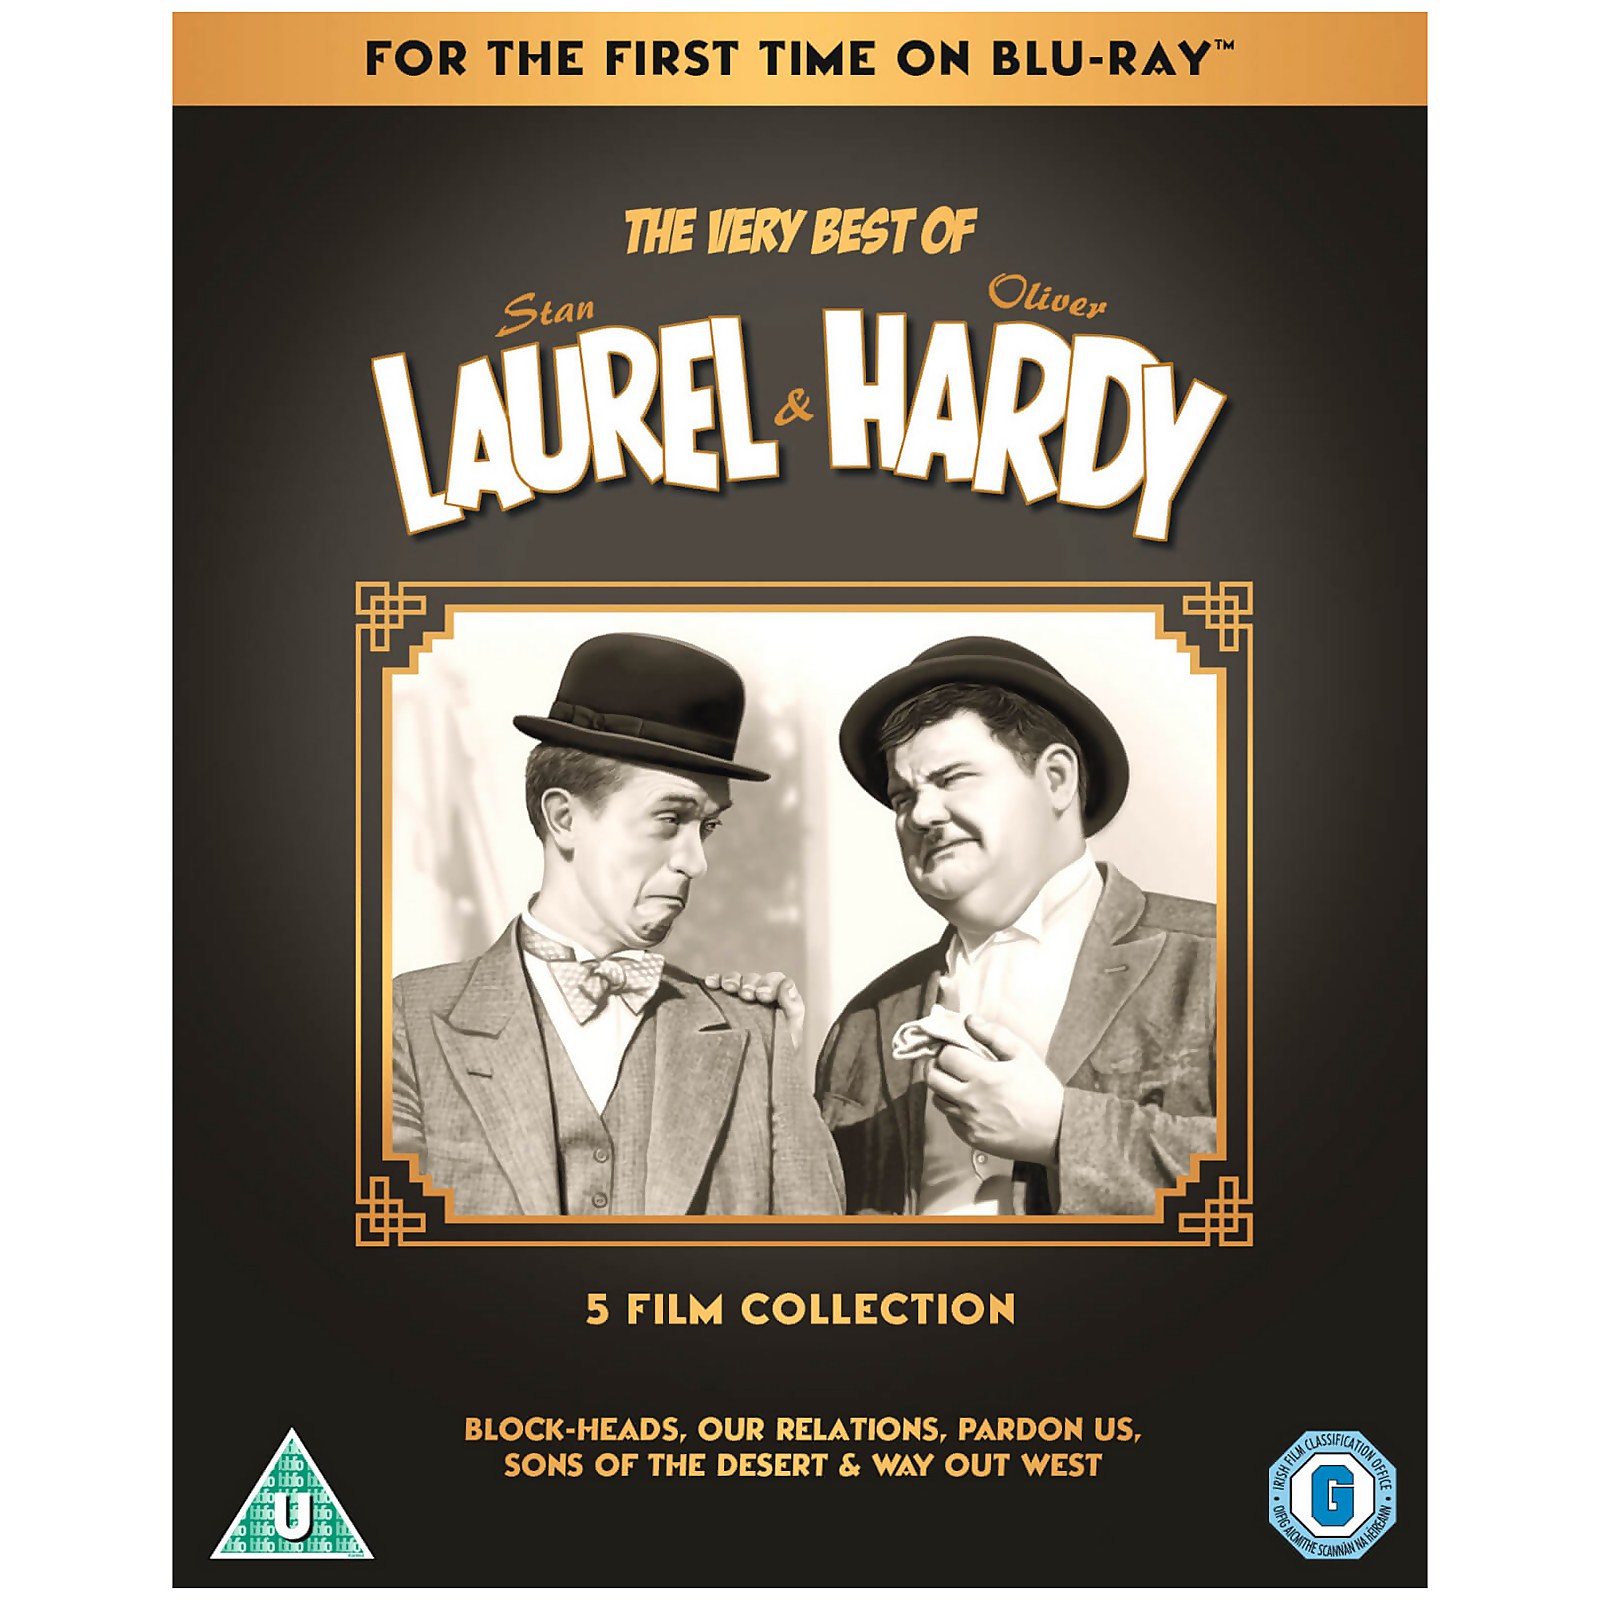 The Very Best Of Laurel & Hardy: Sammlung mit 5 Filmen von Universal Pictures